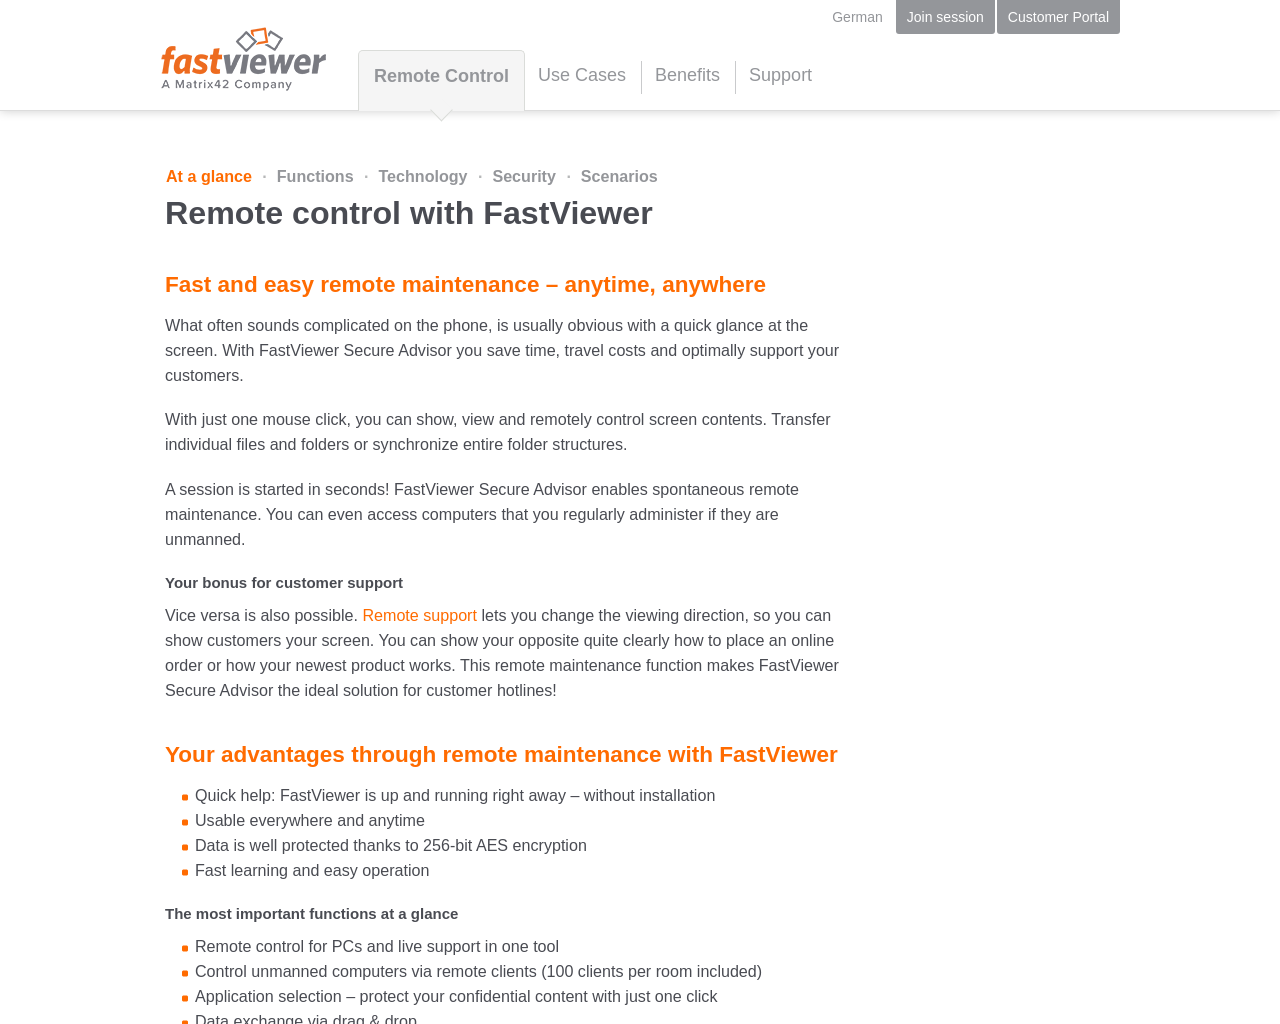 fastviewer.com